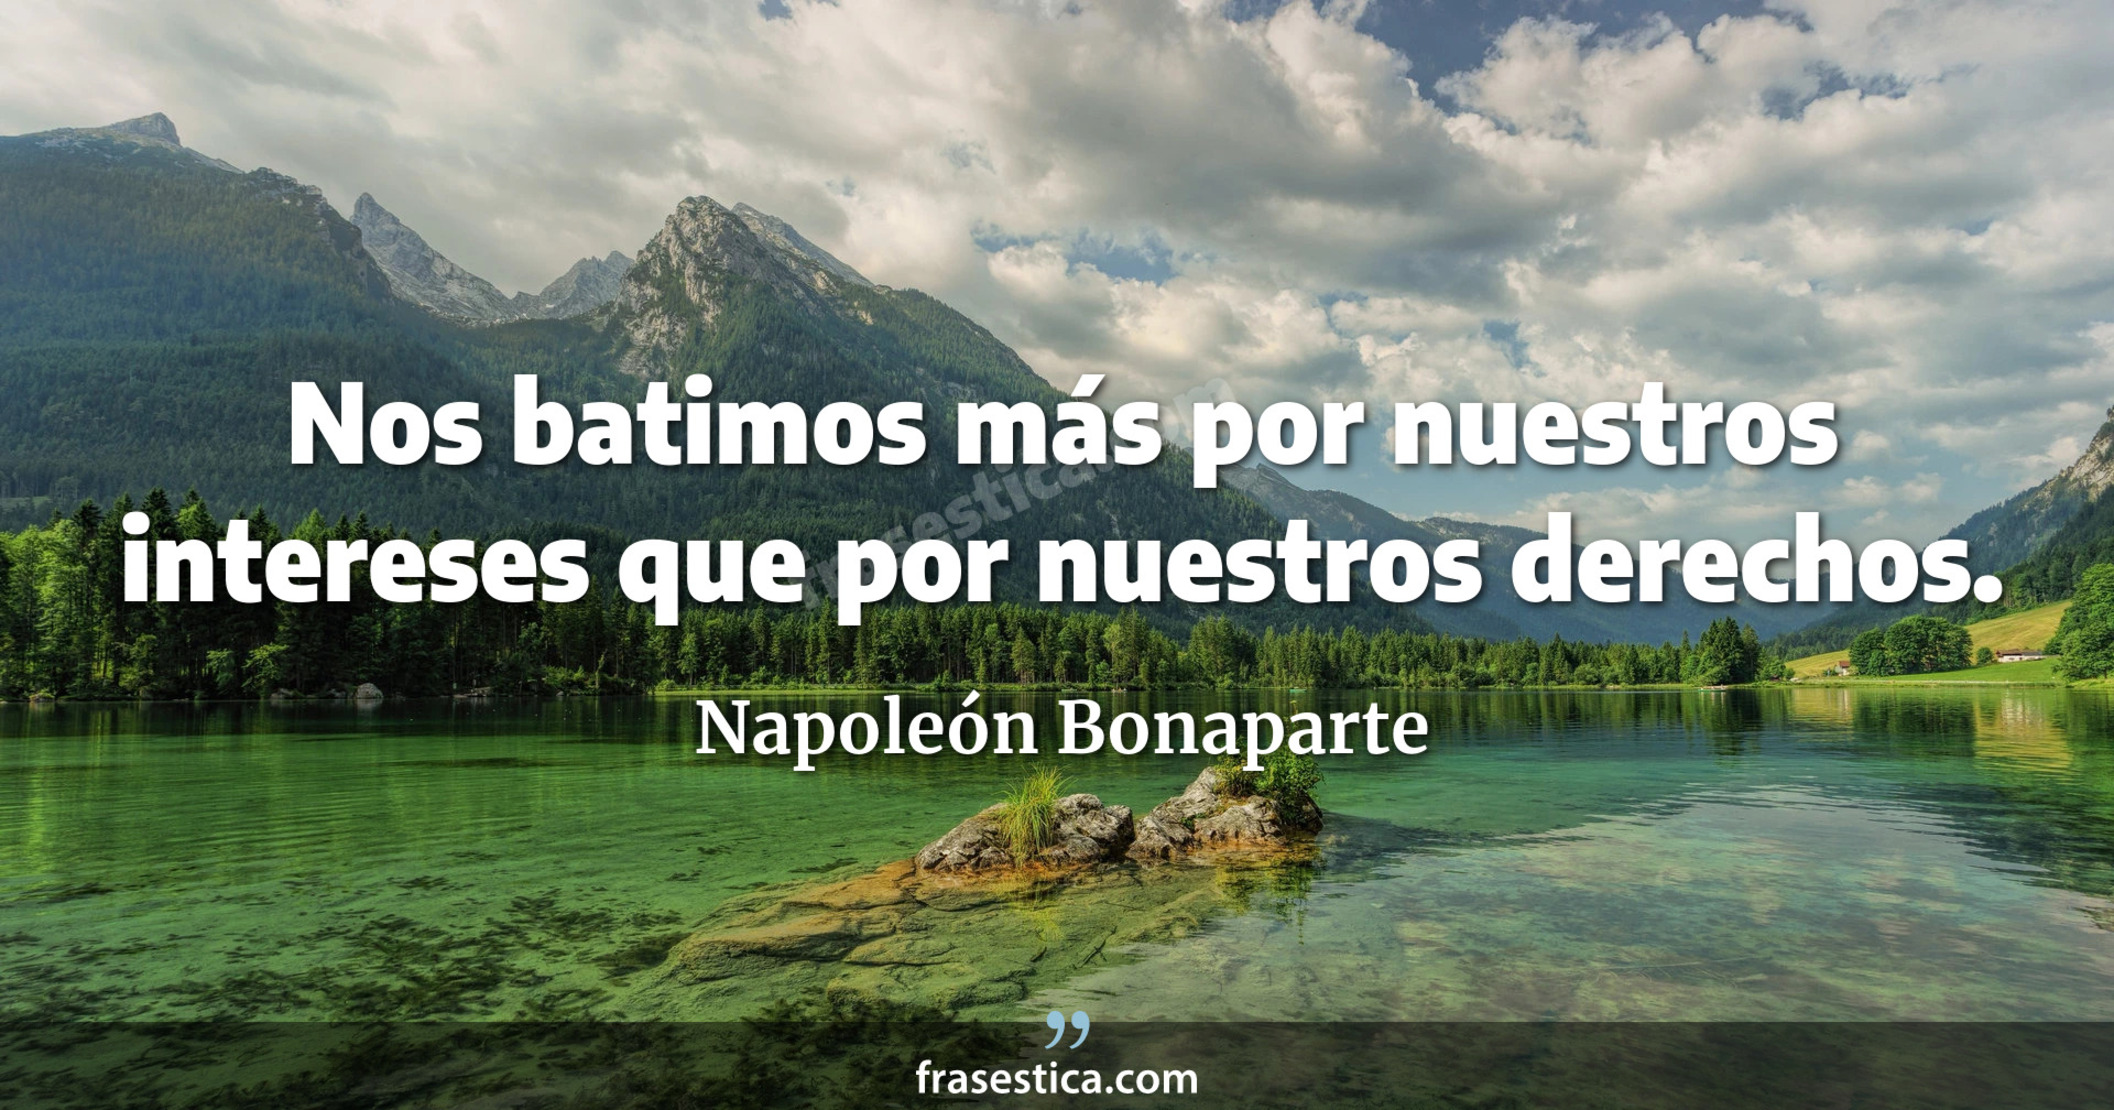 Nos batimos más por nuestros intereses que por nuestros derechos. - Napoleón Bonaparte